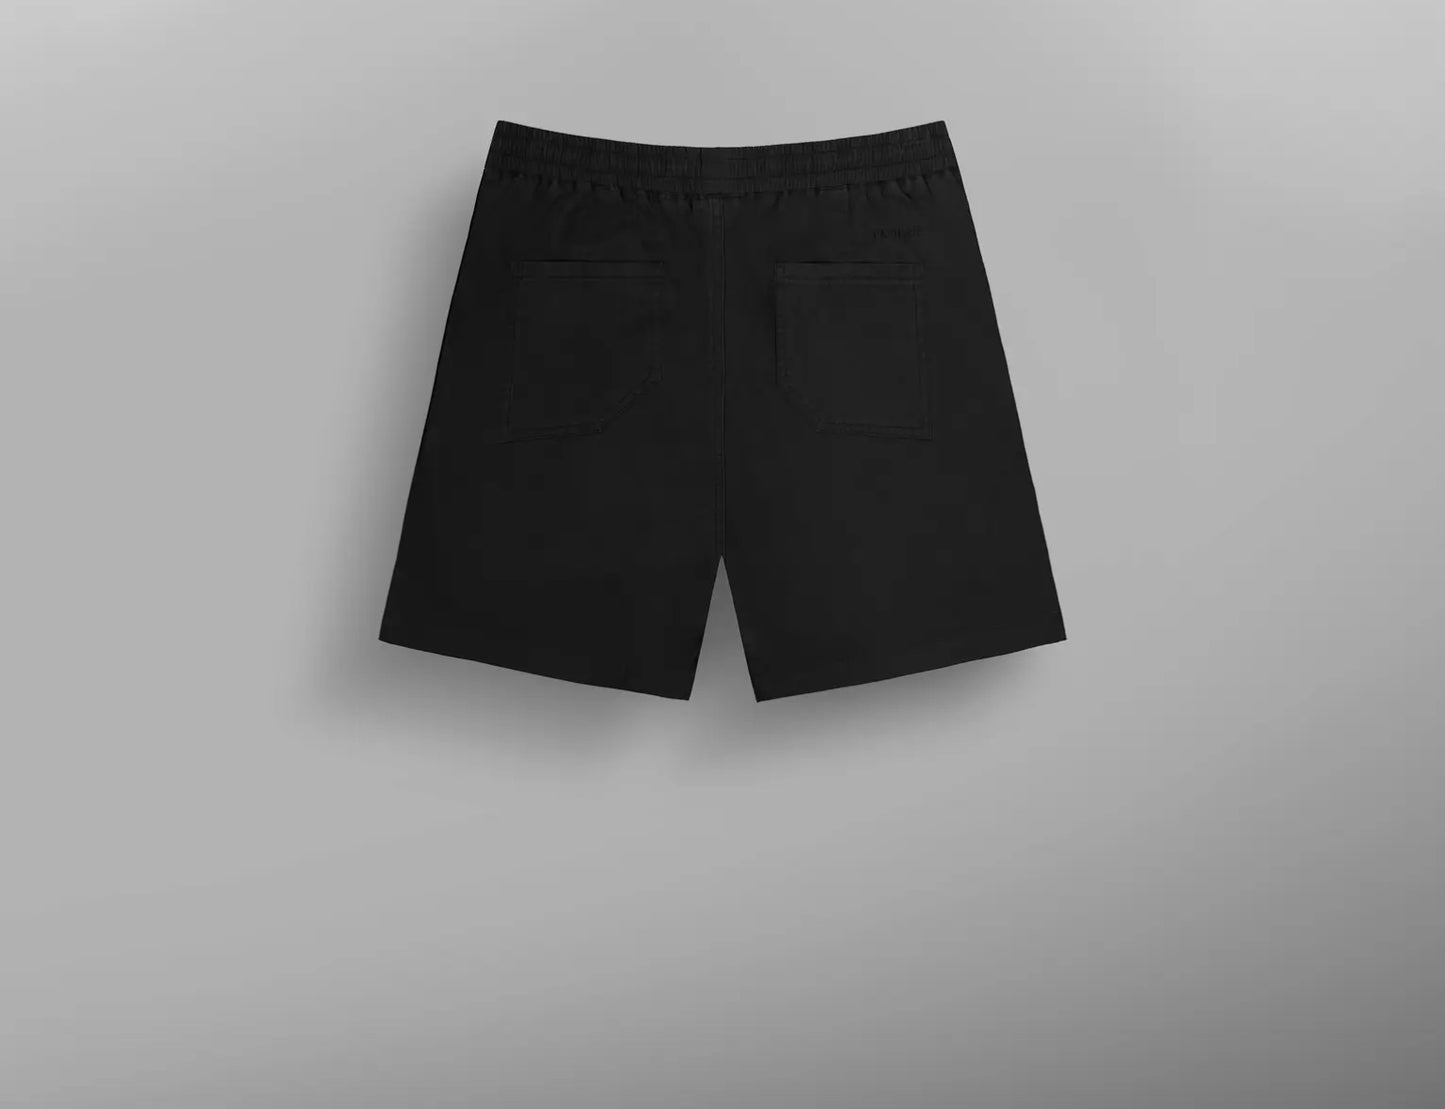 Calzoncino uomo daverson shorts